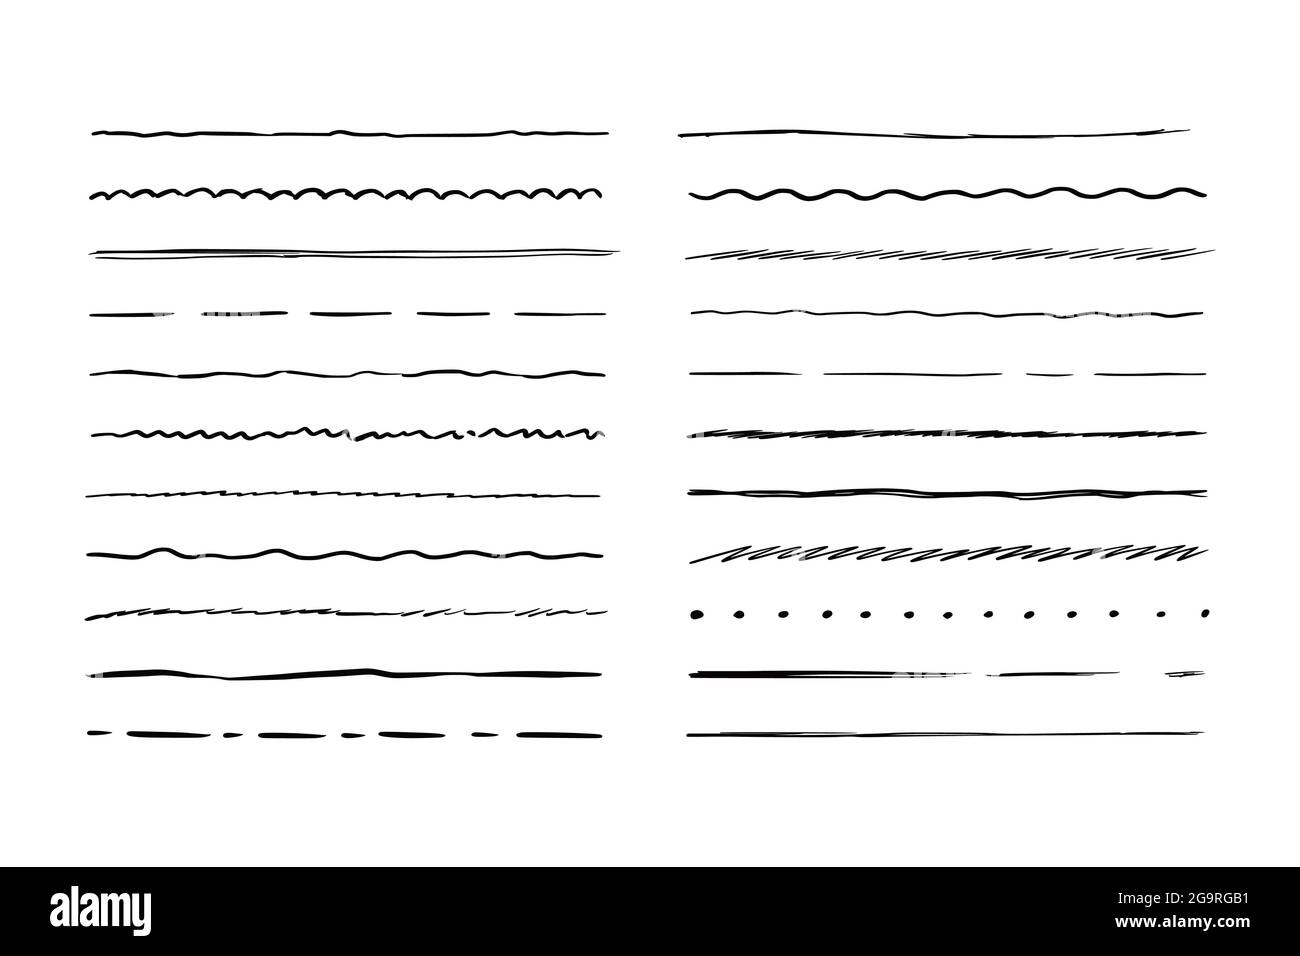 Linea di forma ruvida disegnata a mano. Tracciare lo stile del tratto a matita. Onda orizzontale e linea di doodle a zigzag. Illustrazione vettoriale per bordo, cornice. Illustrazione Vettoriale